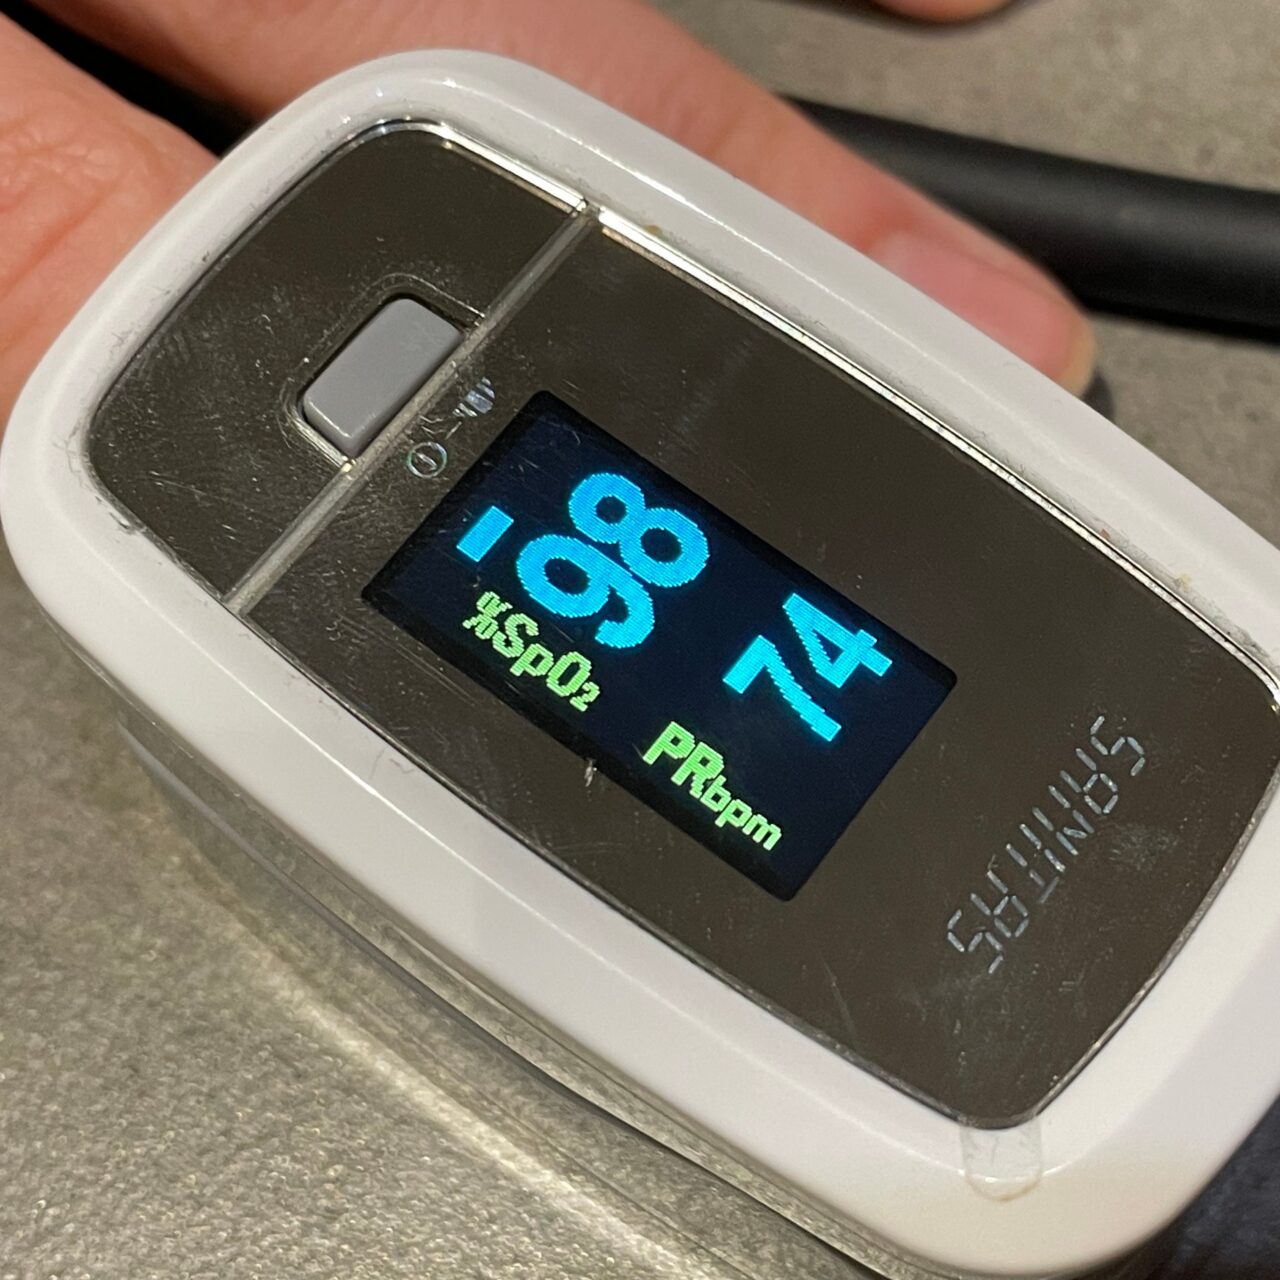 Pulsoksymetr na palcu z wyświetlaczem wskazującym poziom nasycenia krwi tlenem (SpO2) na poziomie 98% oraz tętno (PRbpm) wynoszące 163 uderzenia na minutę.